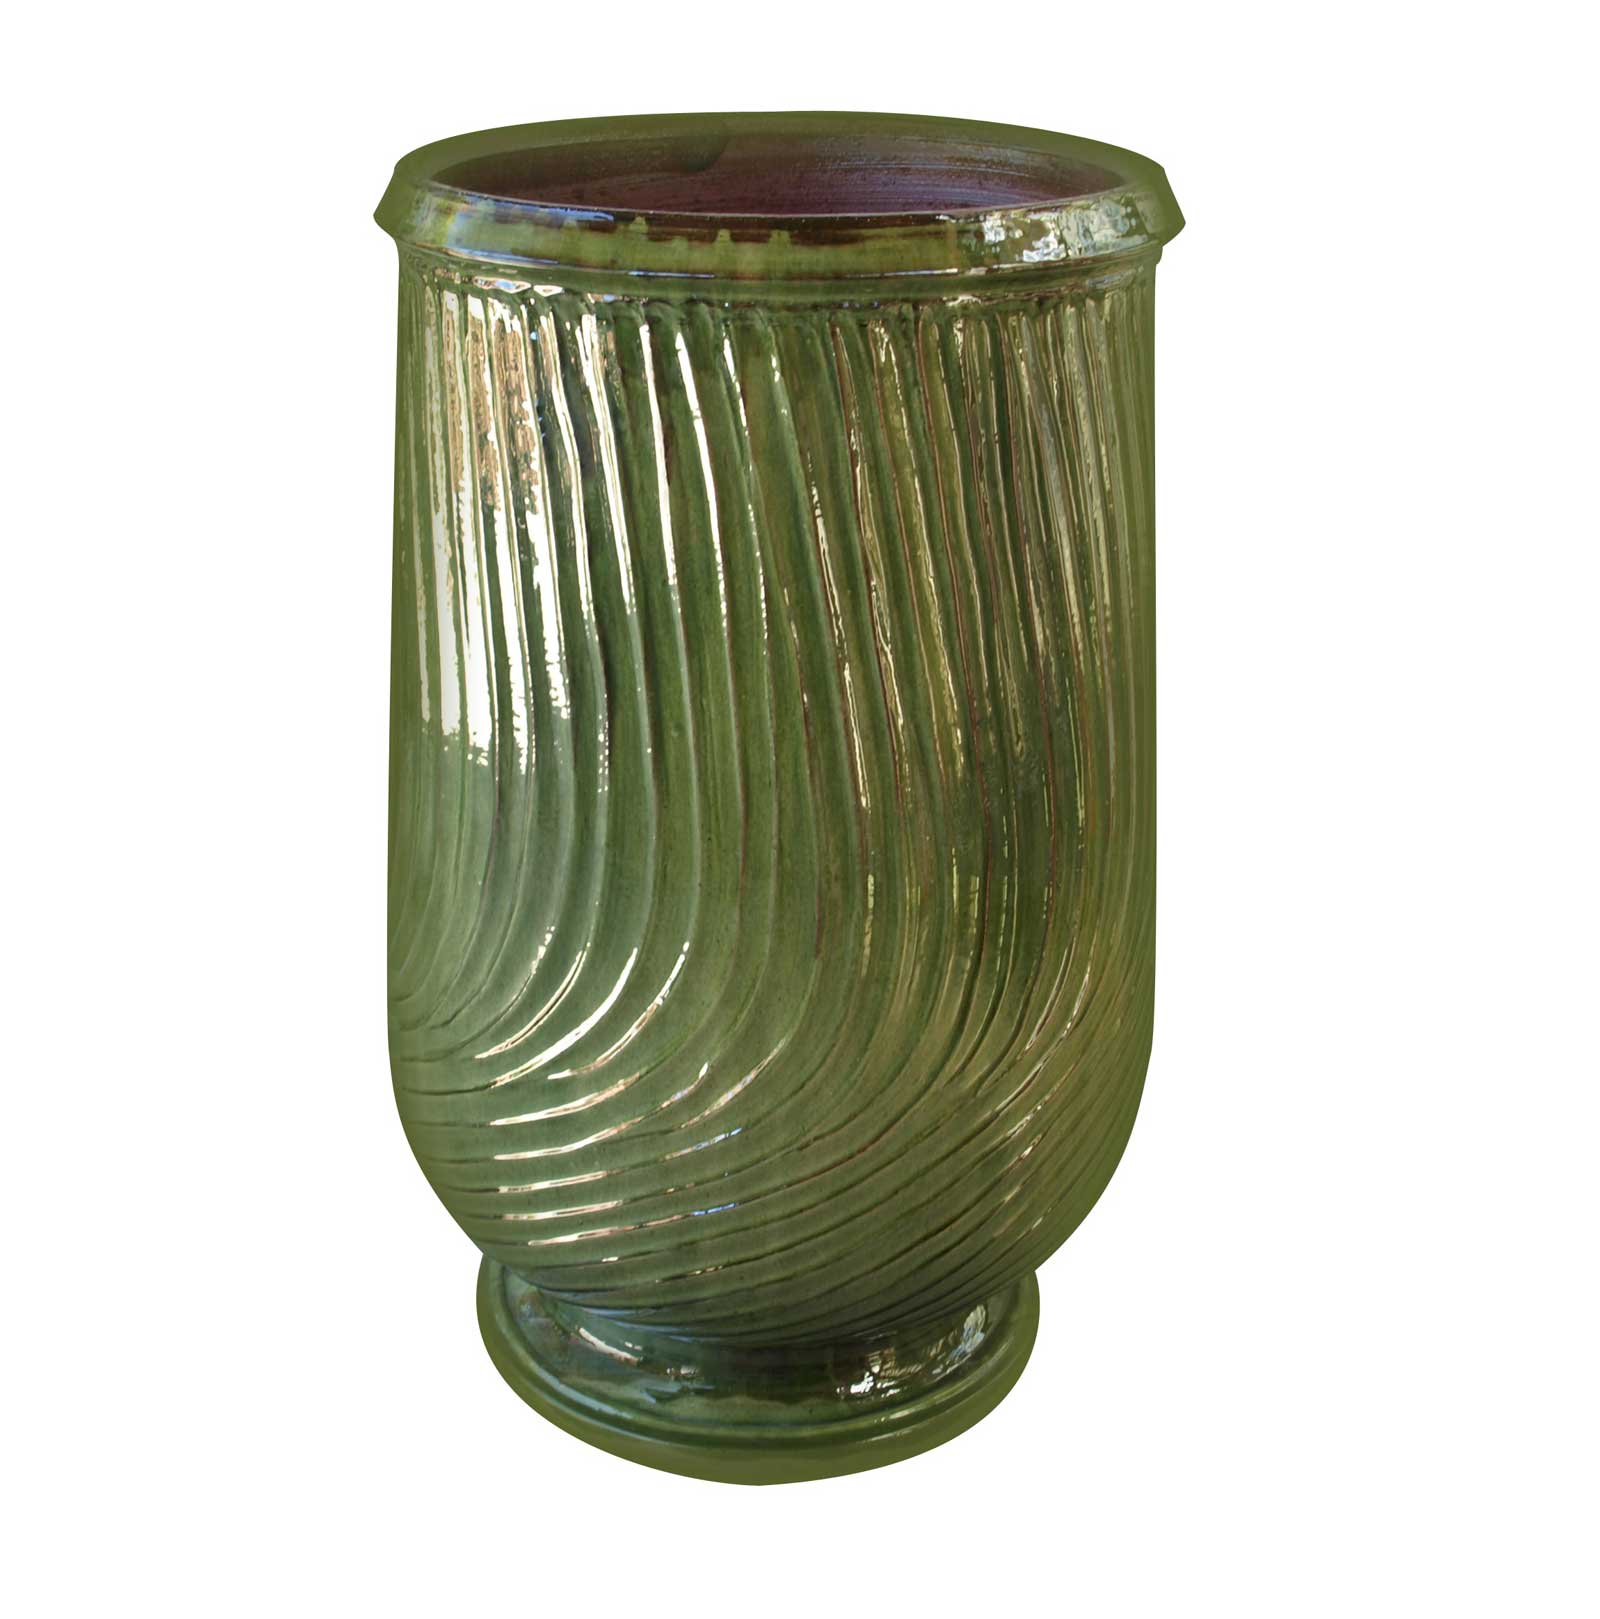 Anduze Jar in Striped Green